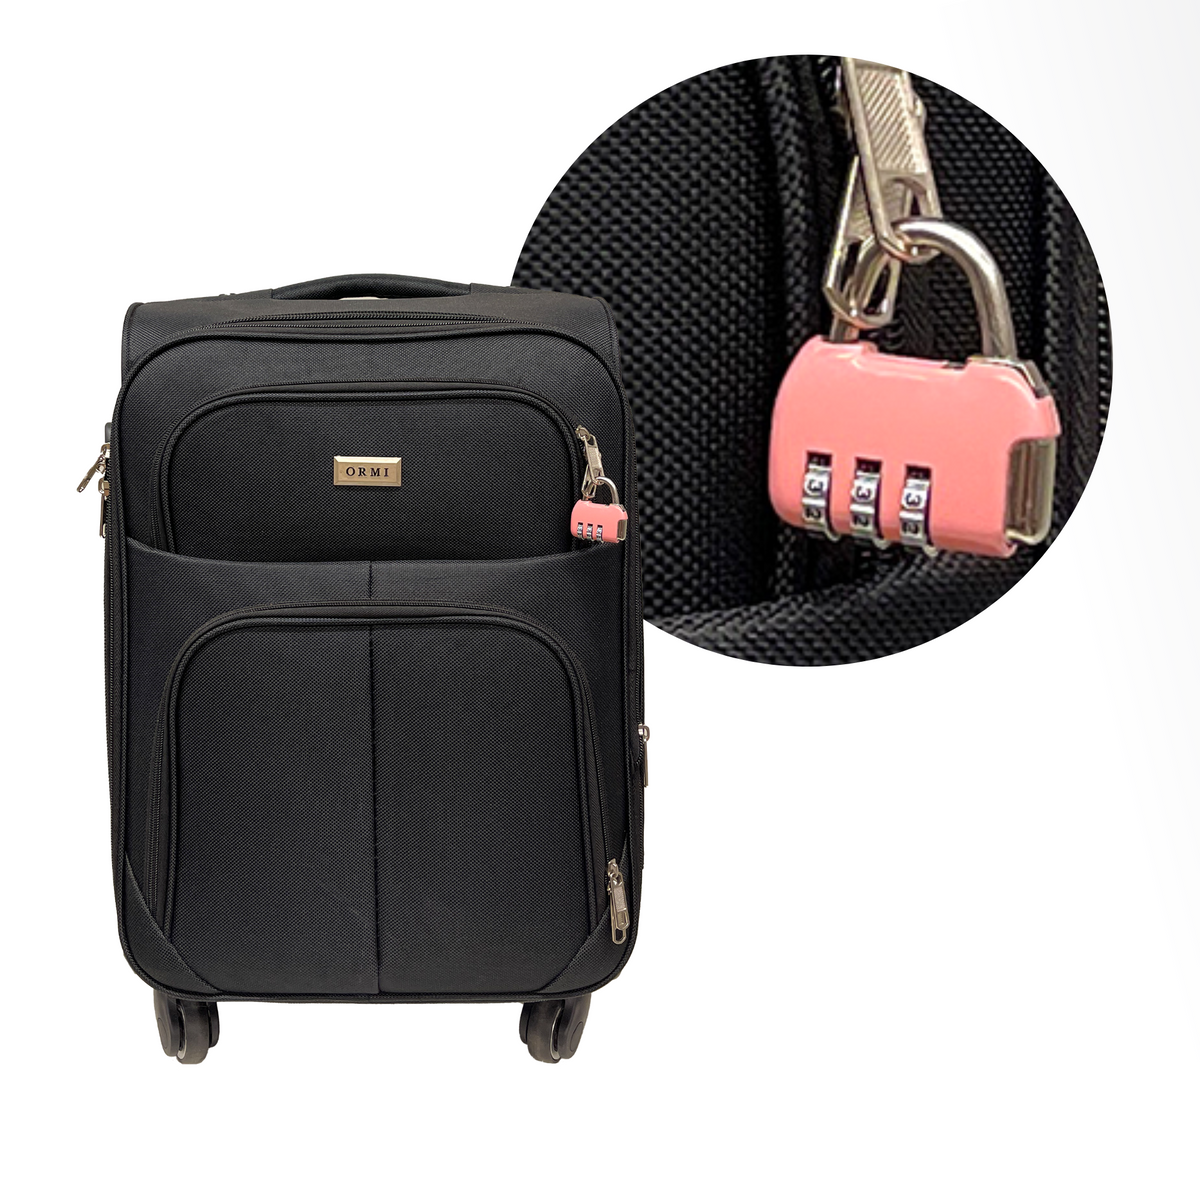 Clema cu combinatie de 3 cifre pentru valiza, bagaje, geanta de calatorie si rucsaci